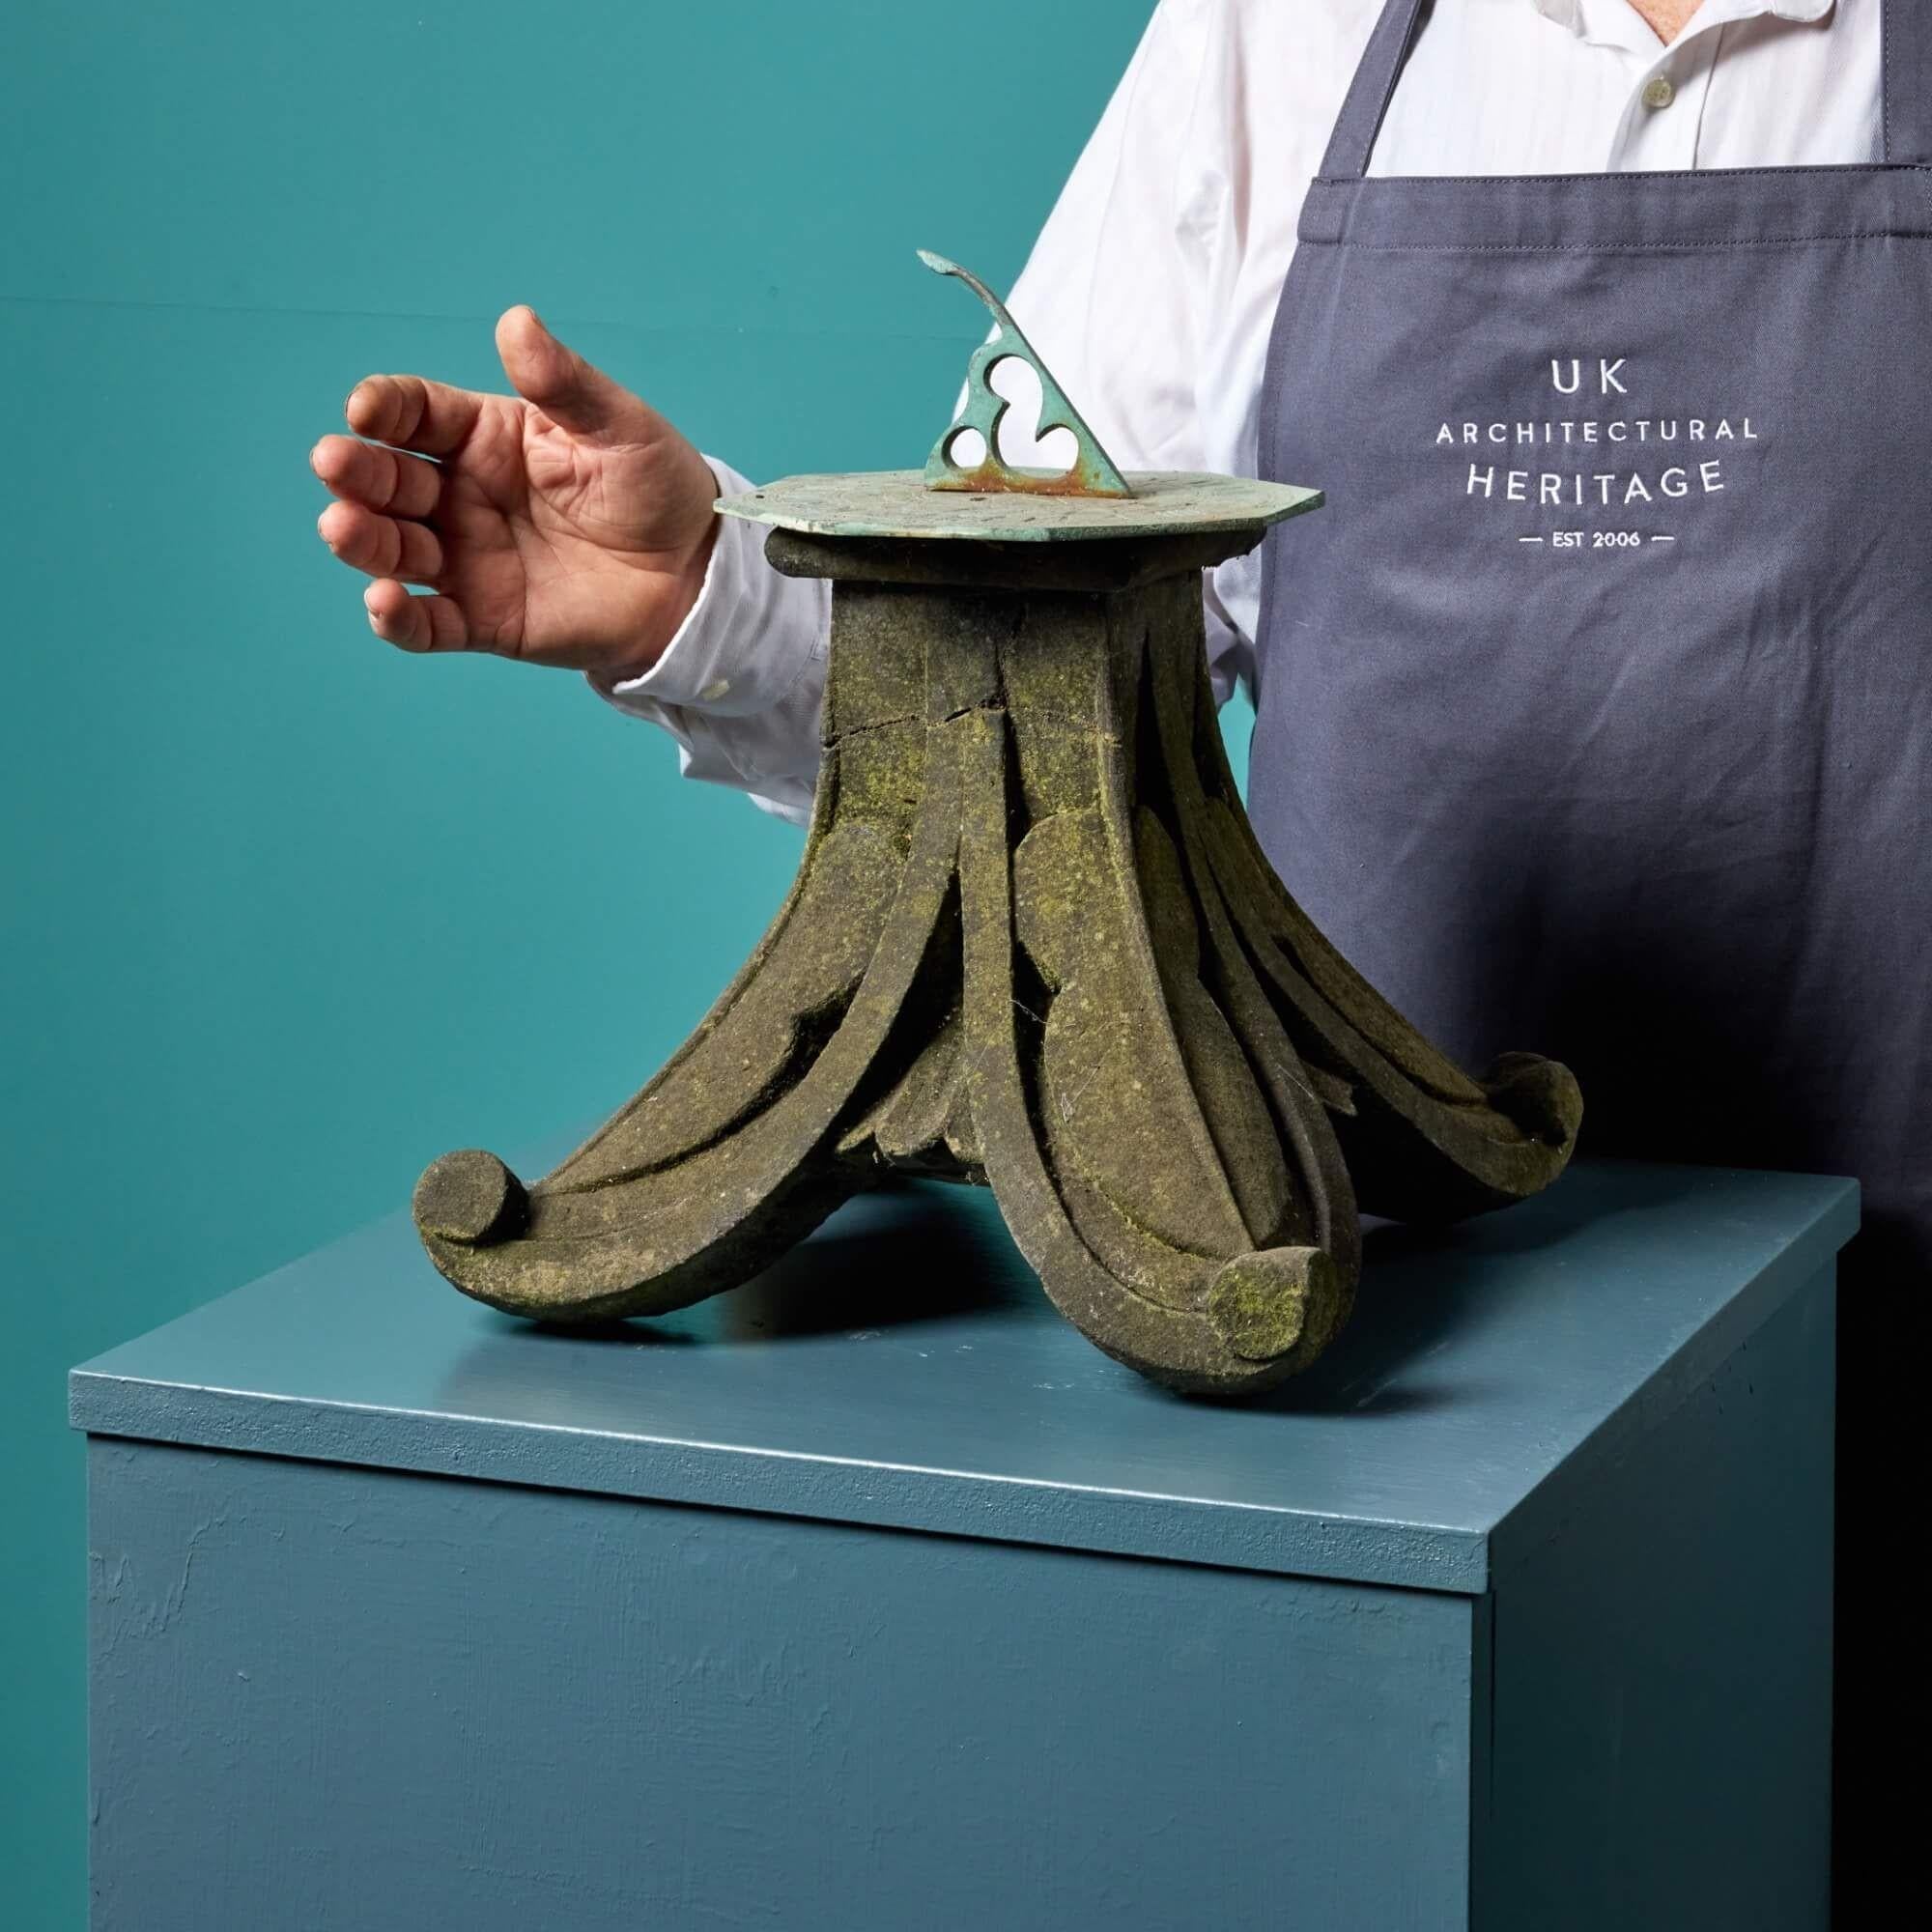 Diese kleine antike Tischsonnenuhr aus dem frühen 20. Jahrhundert besteht aus einem stilvoll geschnitzten Sockel aus Yorker Stein und einer späteren horizontalen Sonnenuhr aus Bronze. Er ist eine schöne Gartendekoration für einen kleinen